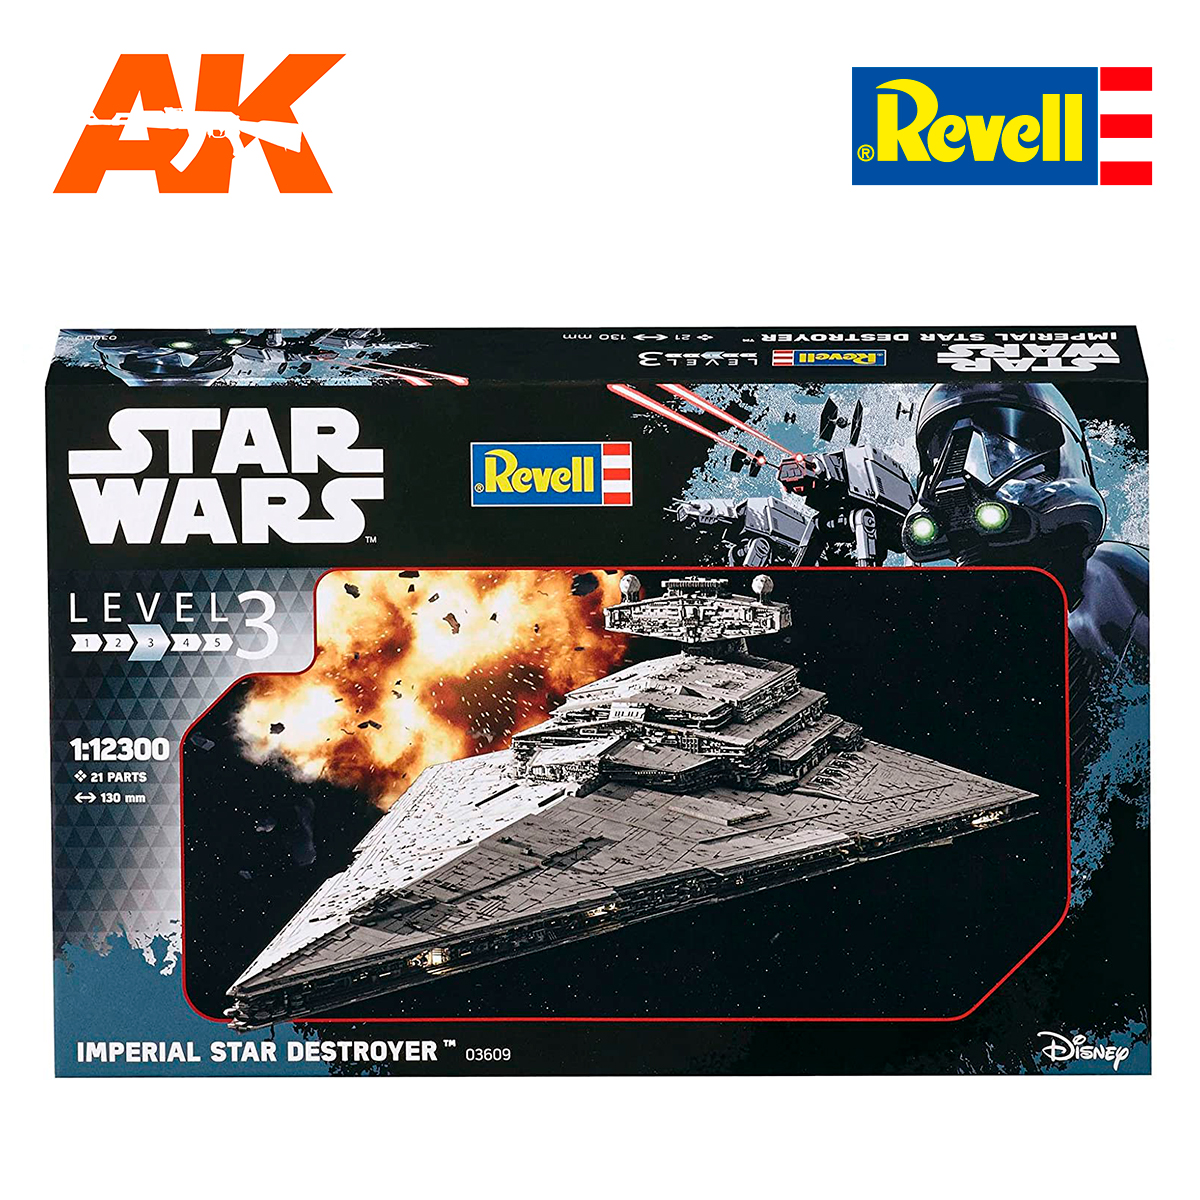 Offiziell Lizenzierter Star Wars Modellbausatz 1/12300 Imperial Star Destroyer 